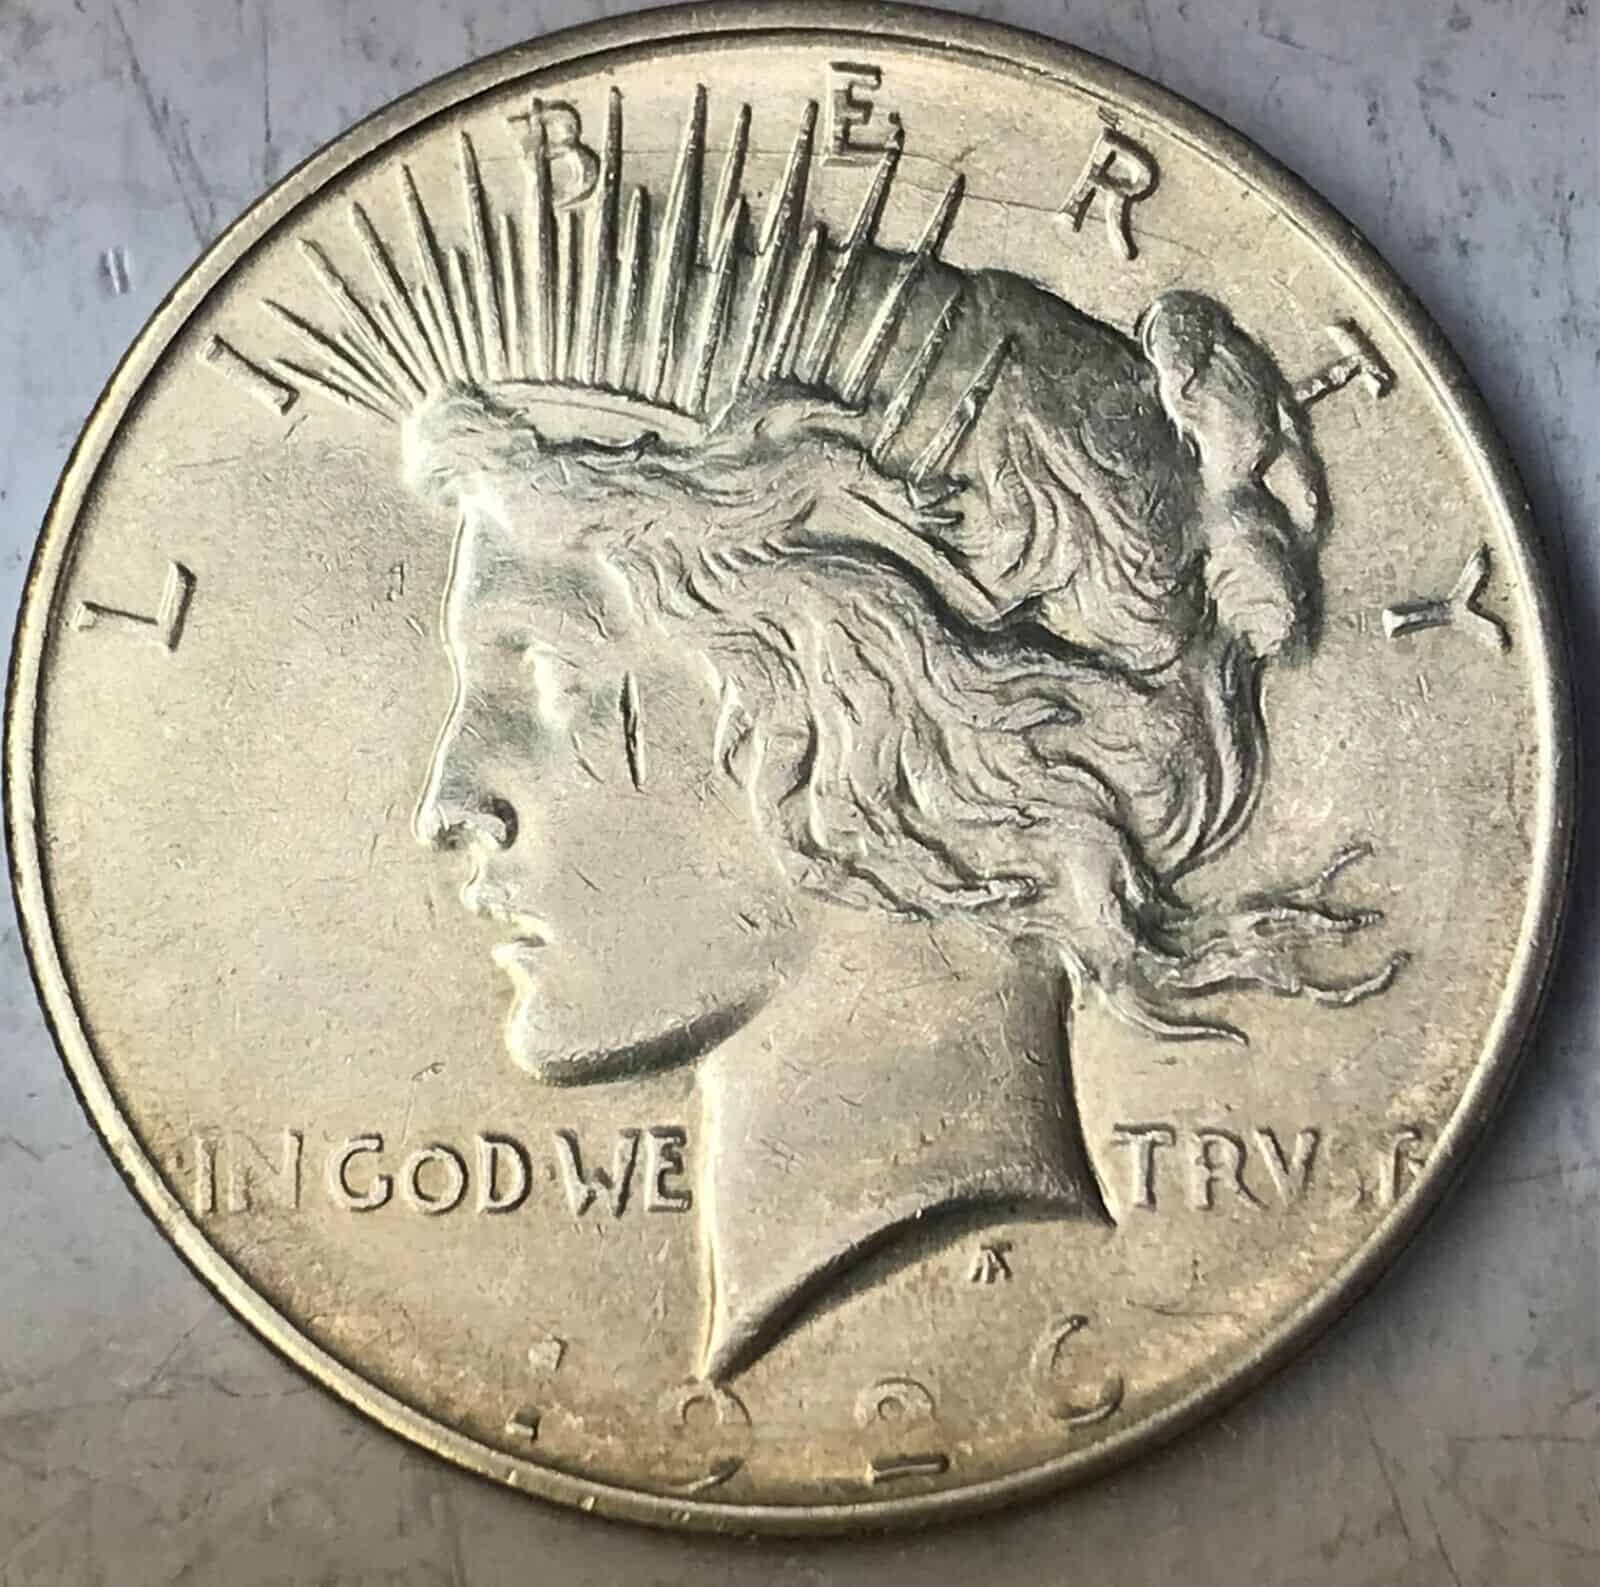 1926 Silver Dollar Obverse Struck Through Error